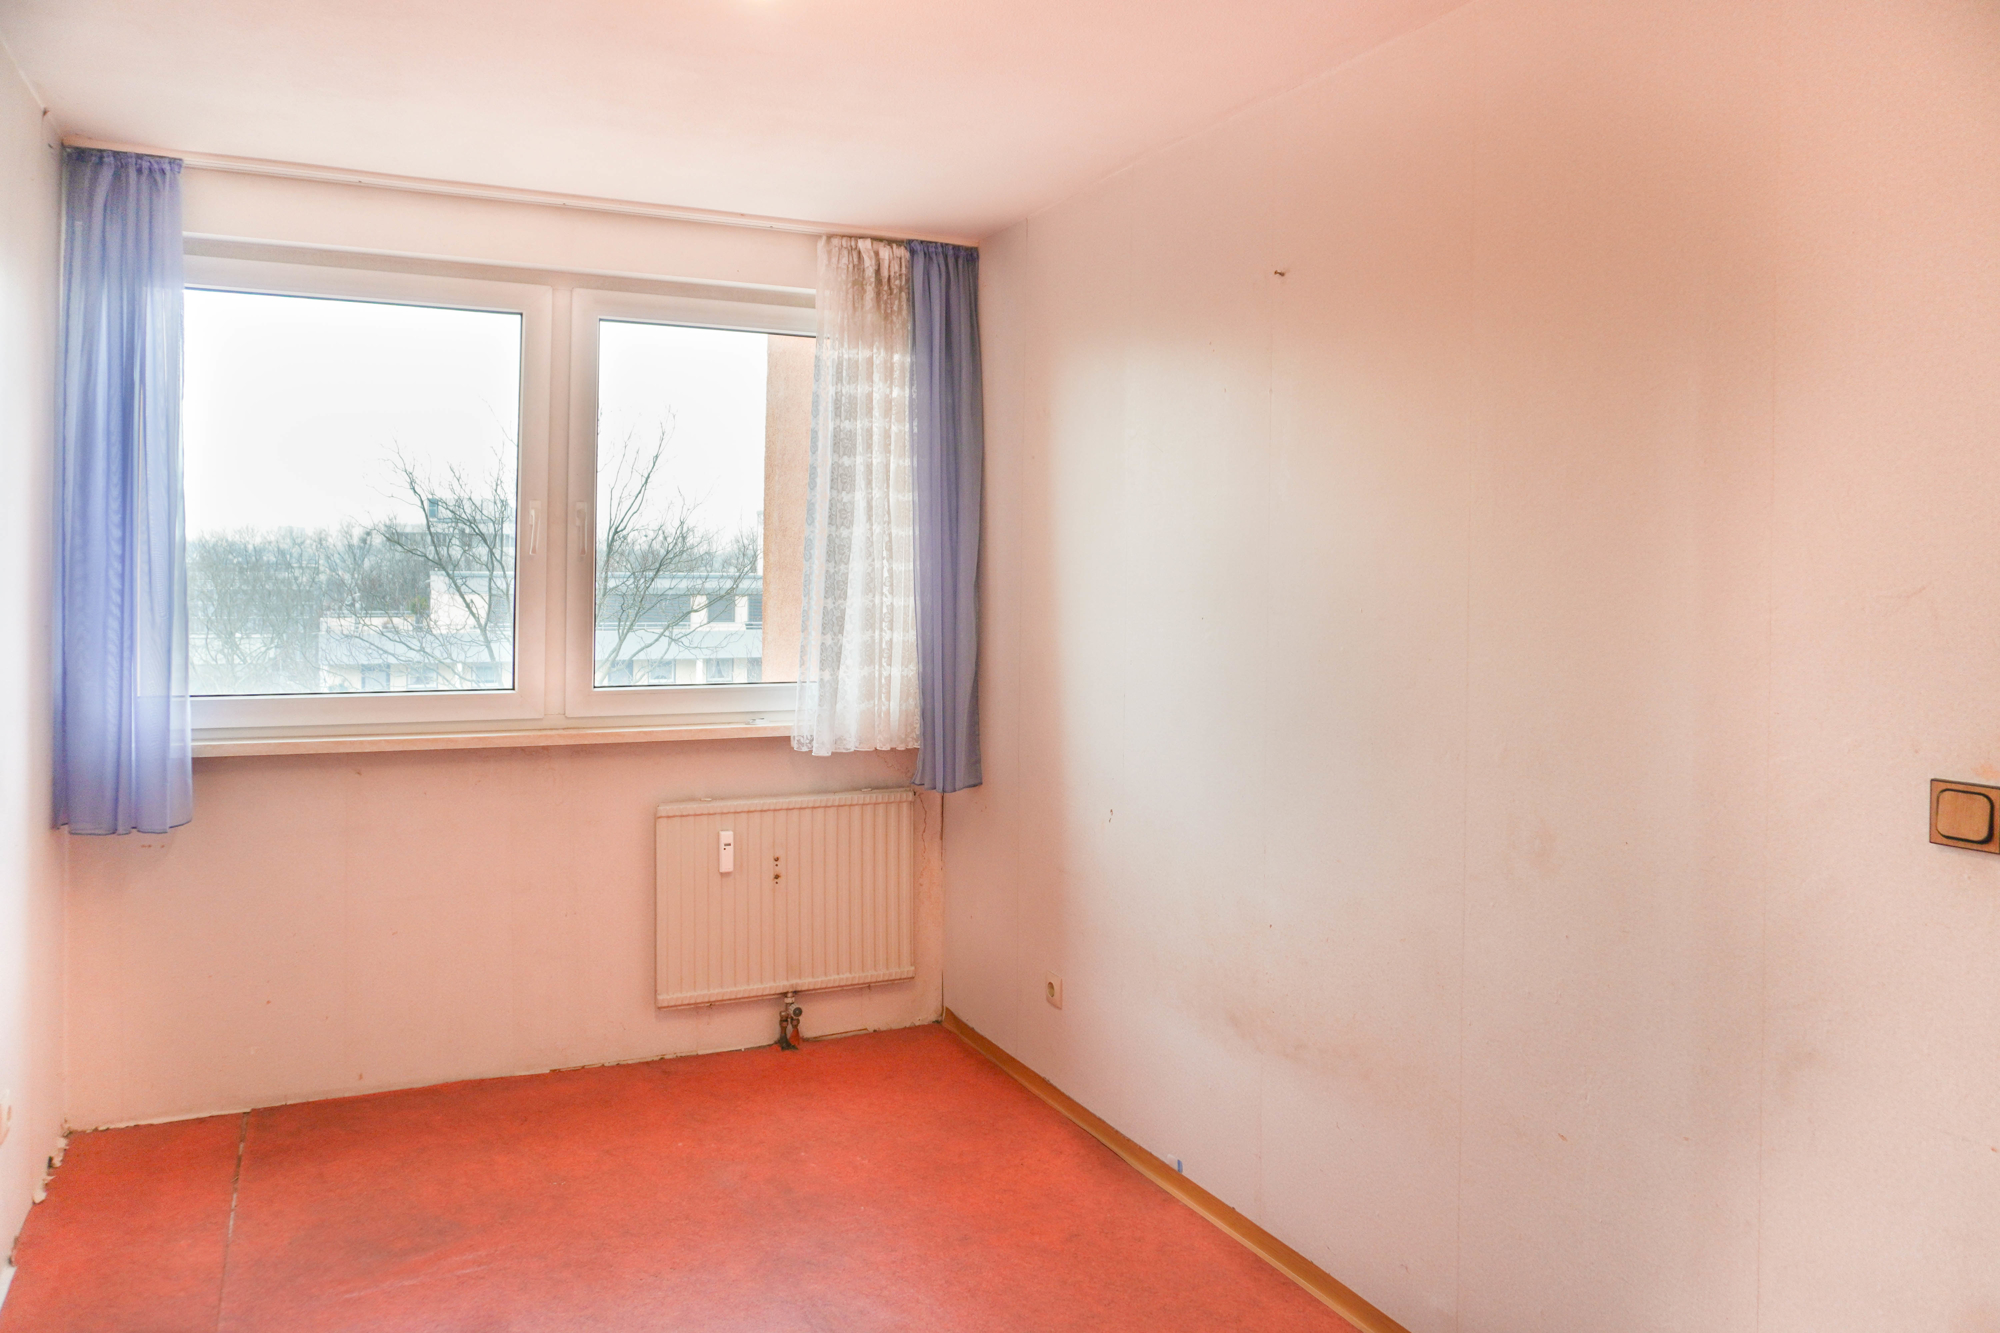 Zimmer I - Immobilienmakler in Heilbronn